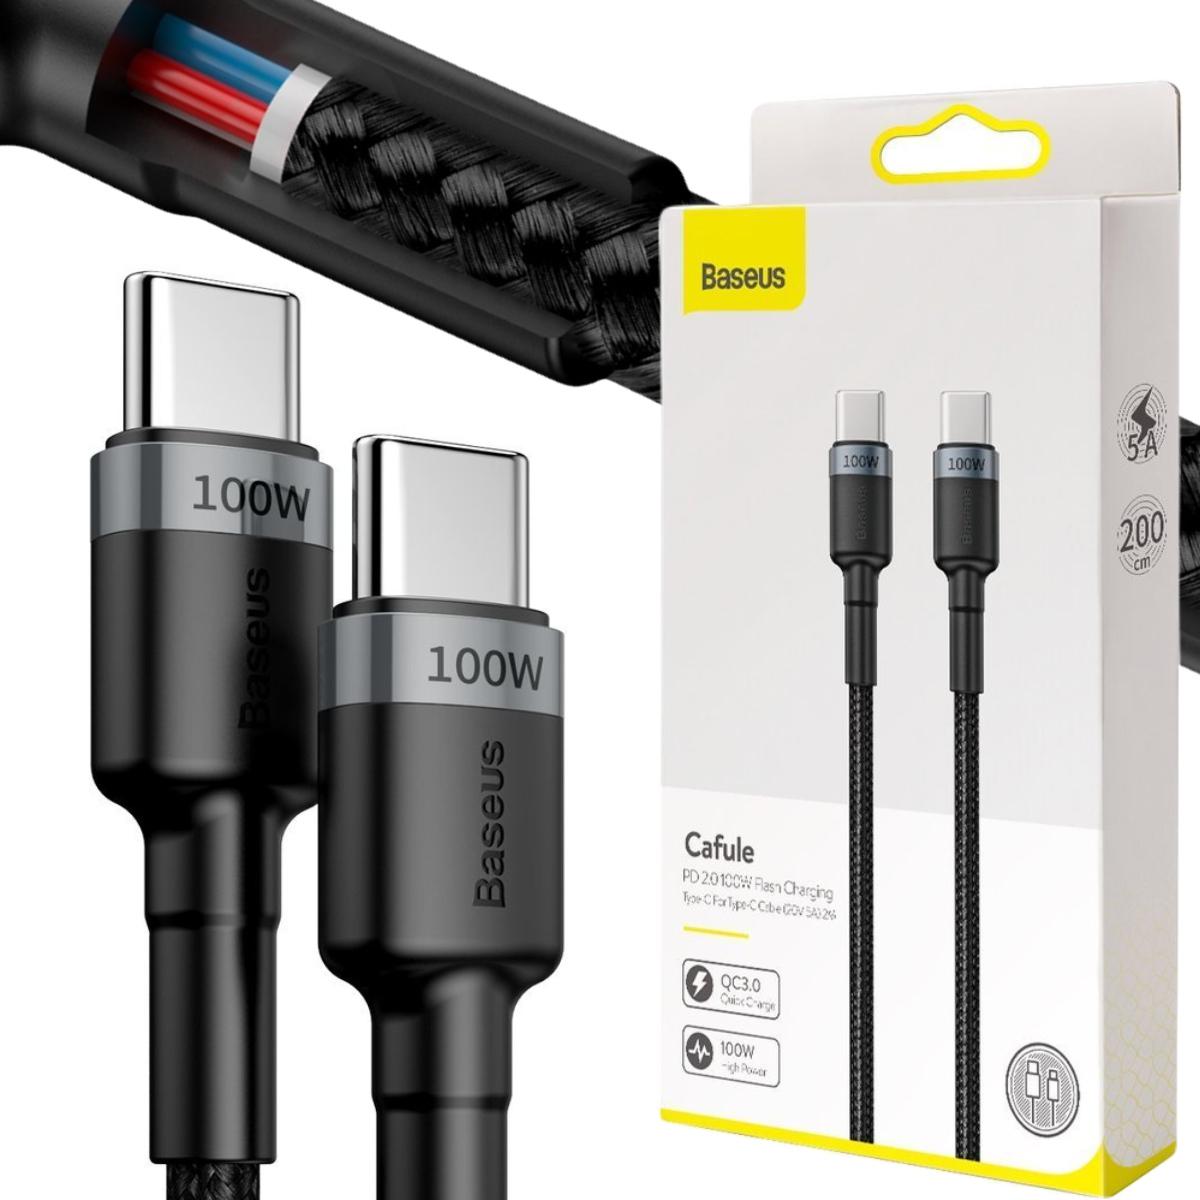 Baseus Cafule nylonowy kabel przewód USB Typ C Power Delivery 2.0 100W 20V 5A 2m szary (CATKLF-ALG1) - najważniejsze cechy: